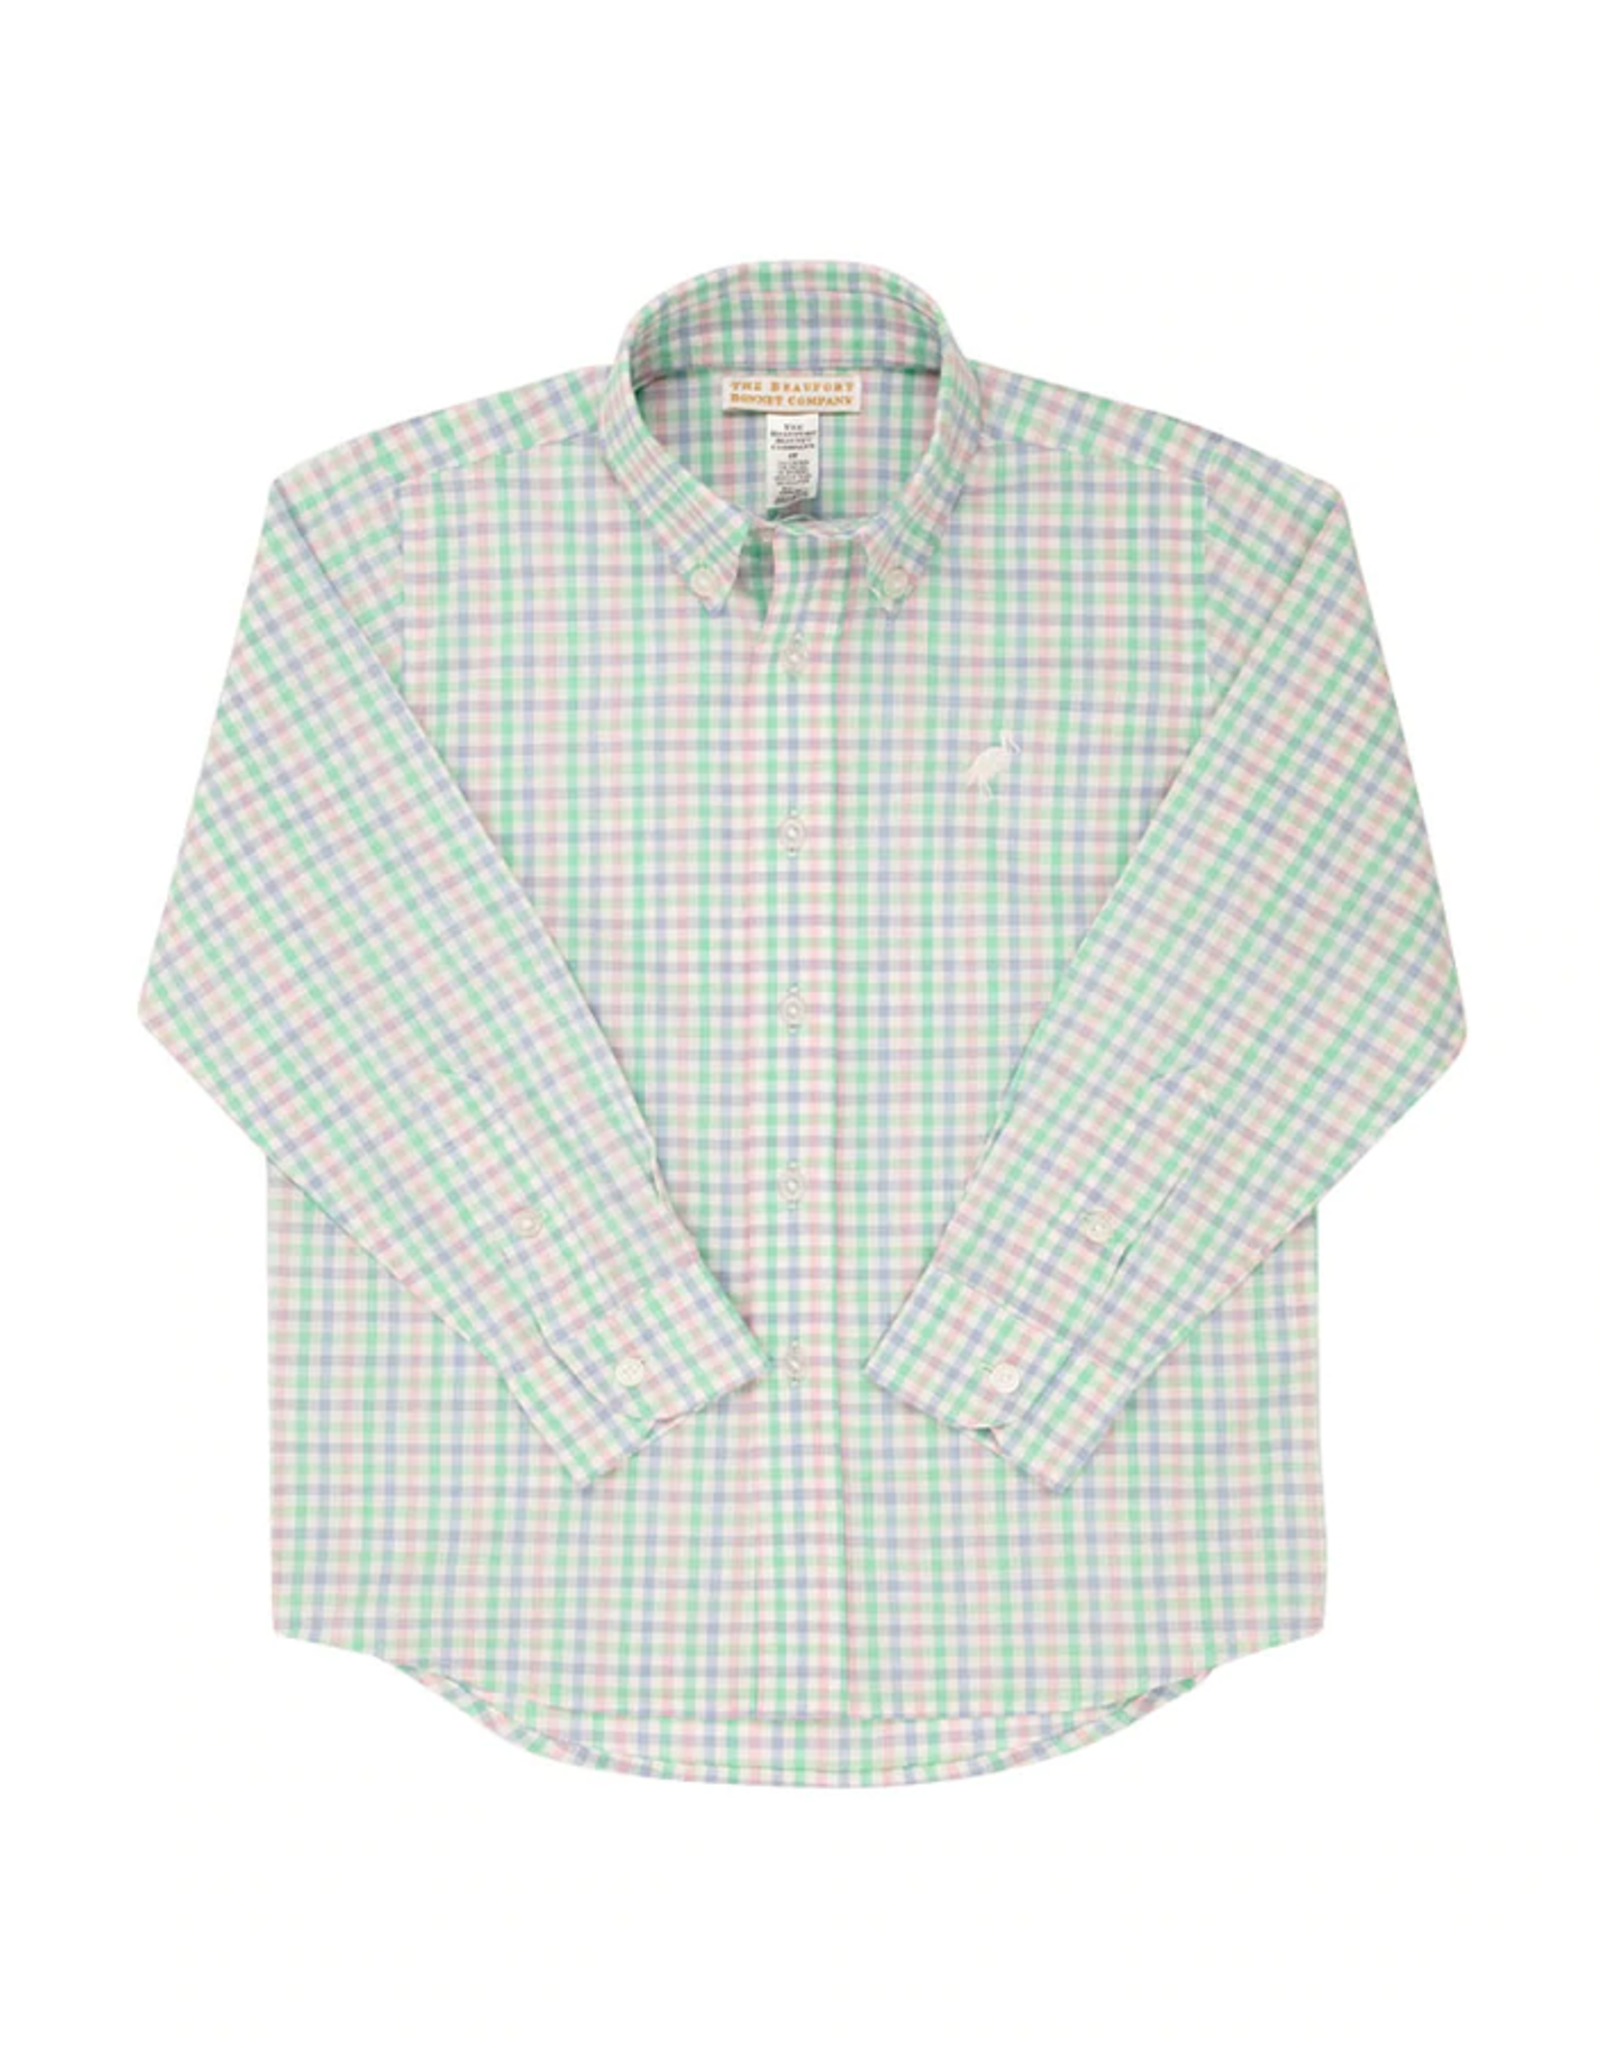 The Beaufort Bonnet Company Deans List Dress Shirt, Sir Propers Preppy Plaid